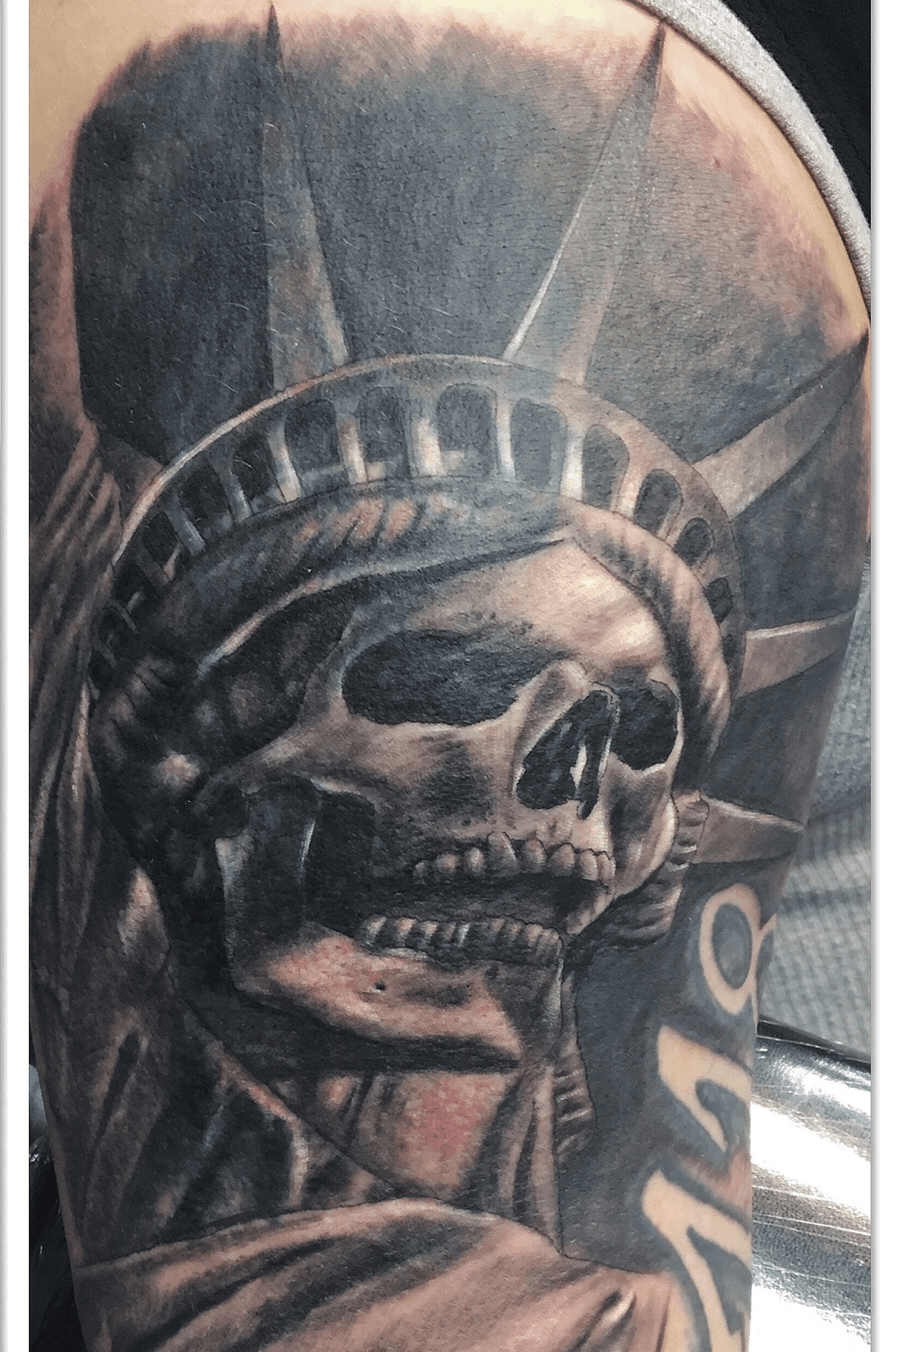 Grez Tattoo Artist at Kings Avenue Tattoo New York  Statue of liberty  tattoo Liberty tattoo Patriotic tattoos